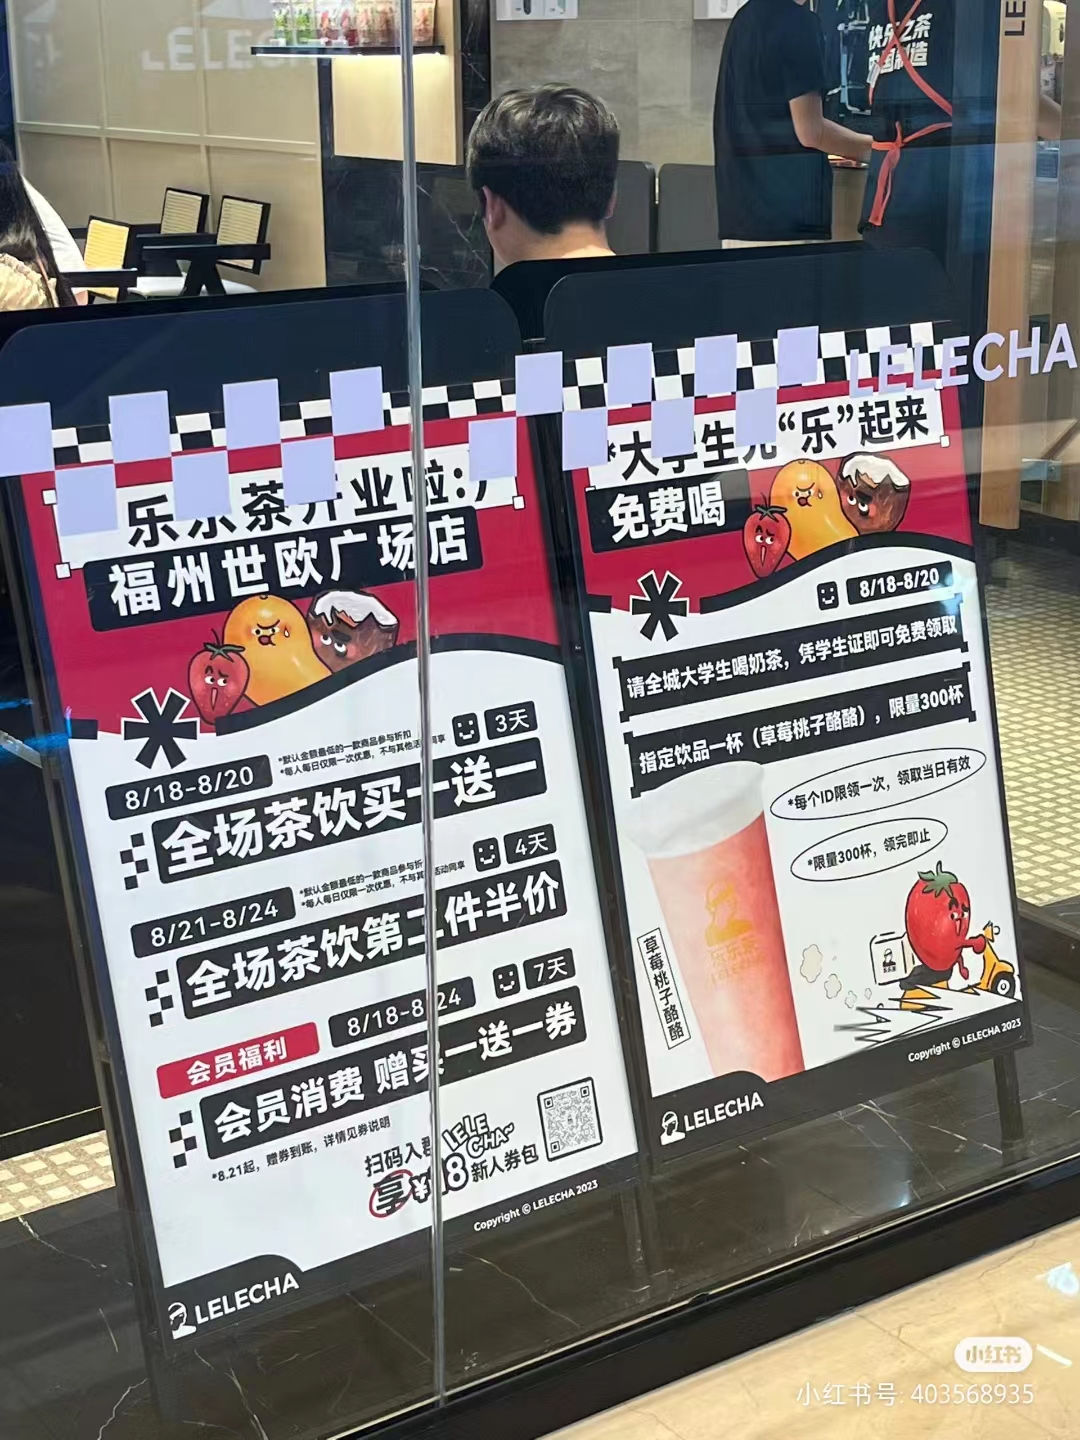 乐乐茶首批50家加盟店即将于8月落地_新浪财经_新浪网